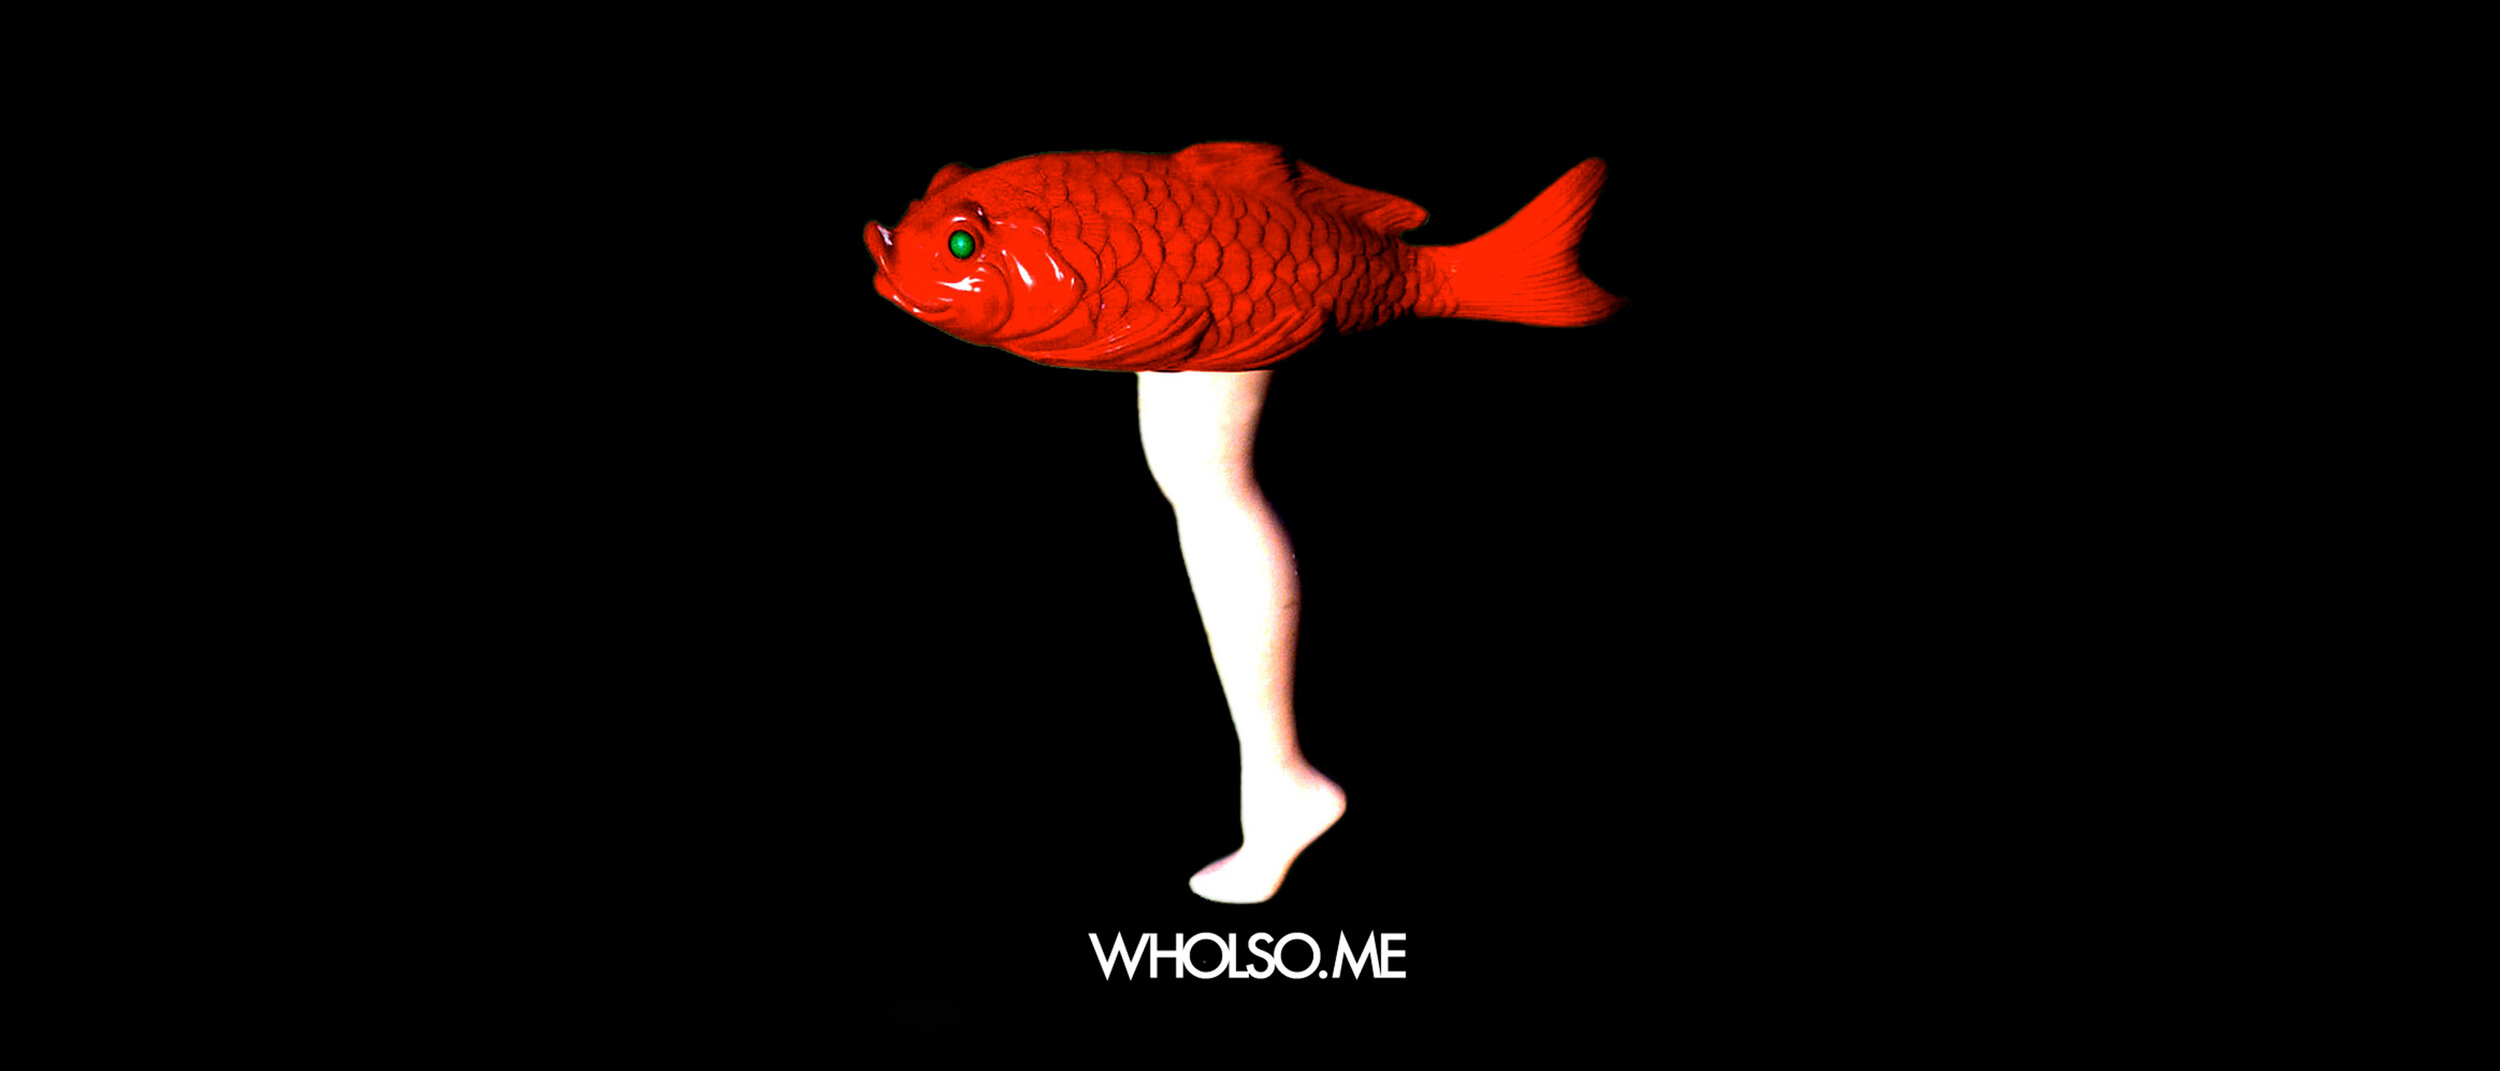 Legfish Koozie - Wholesome